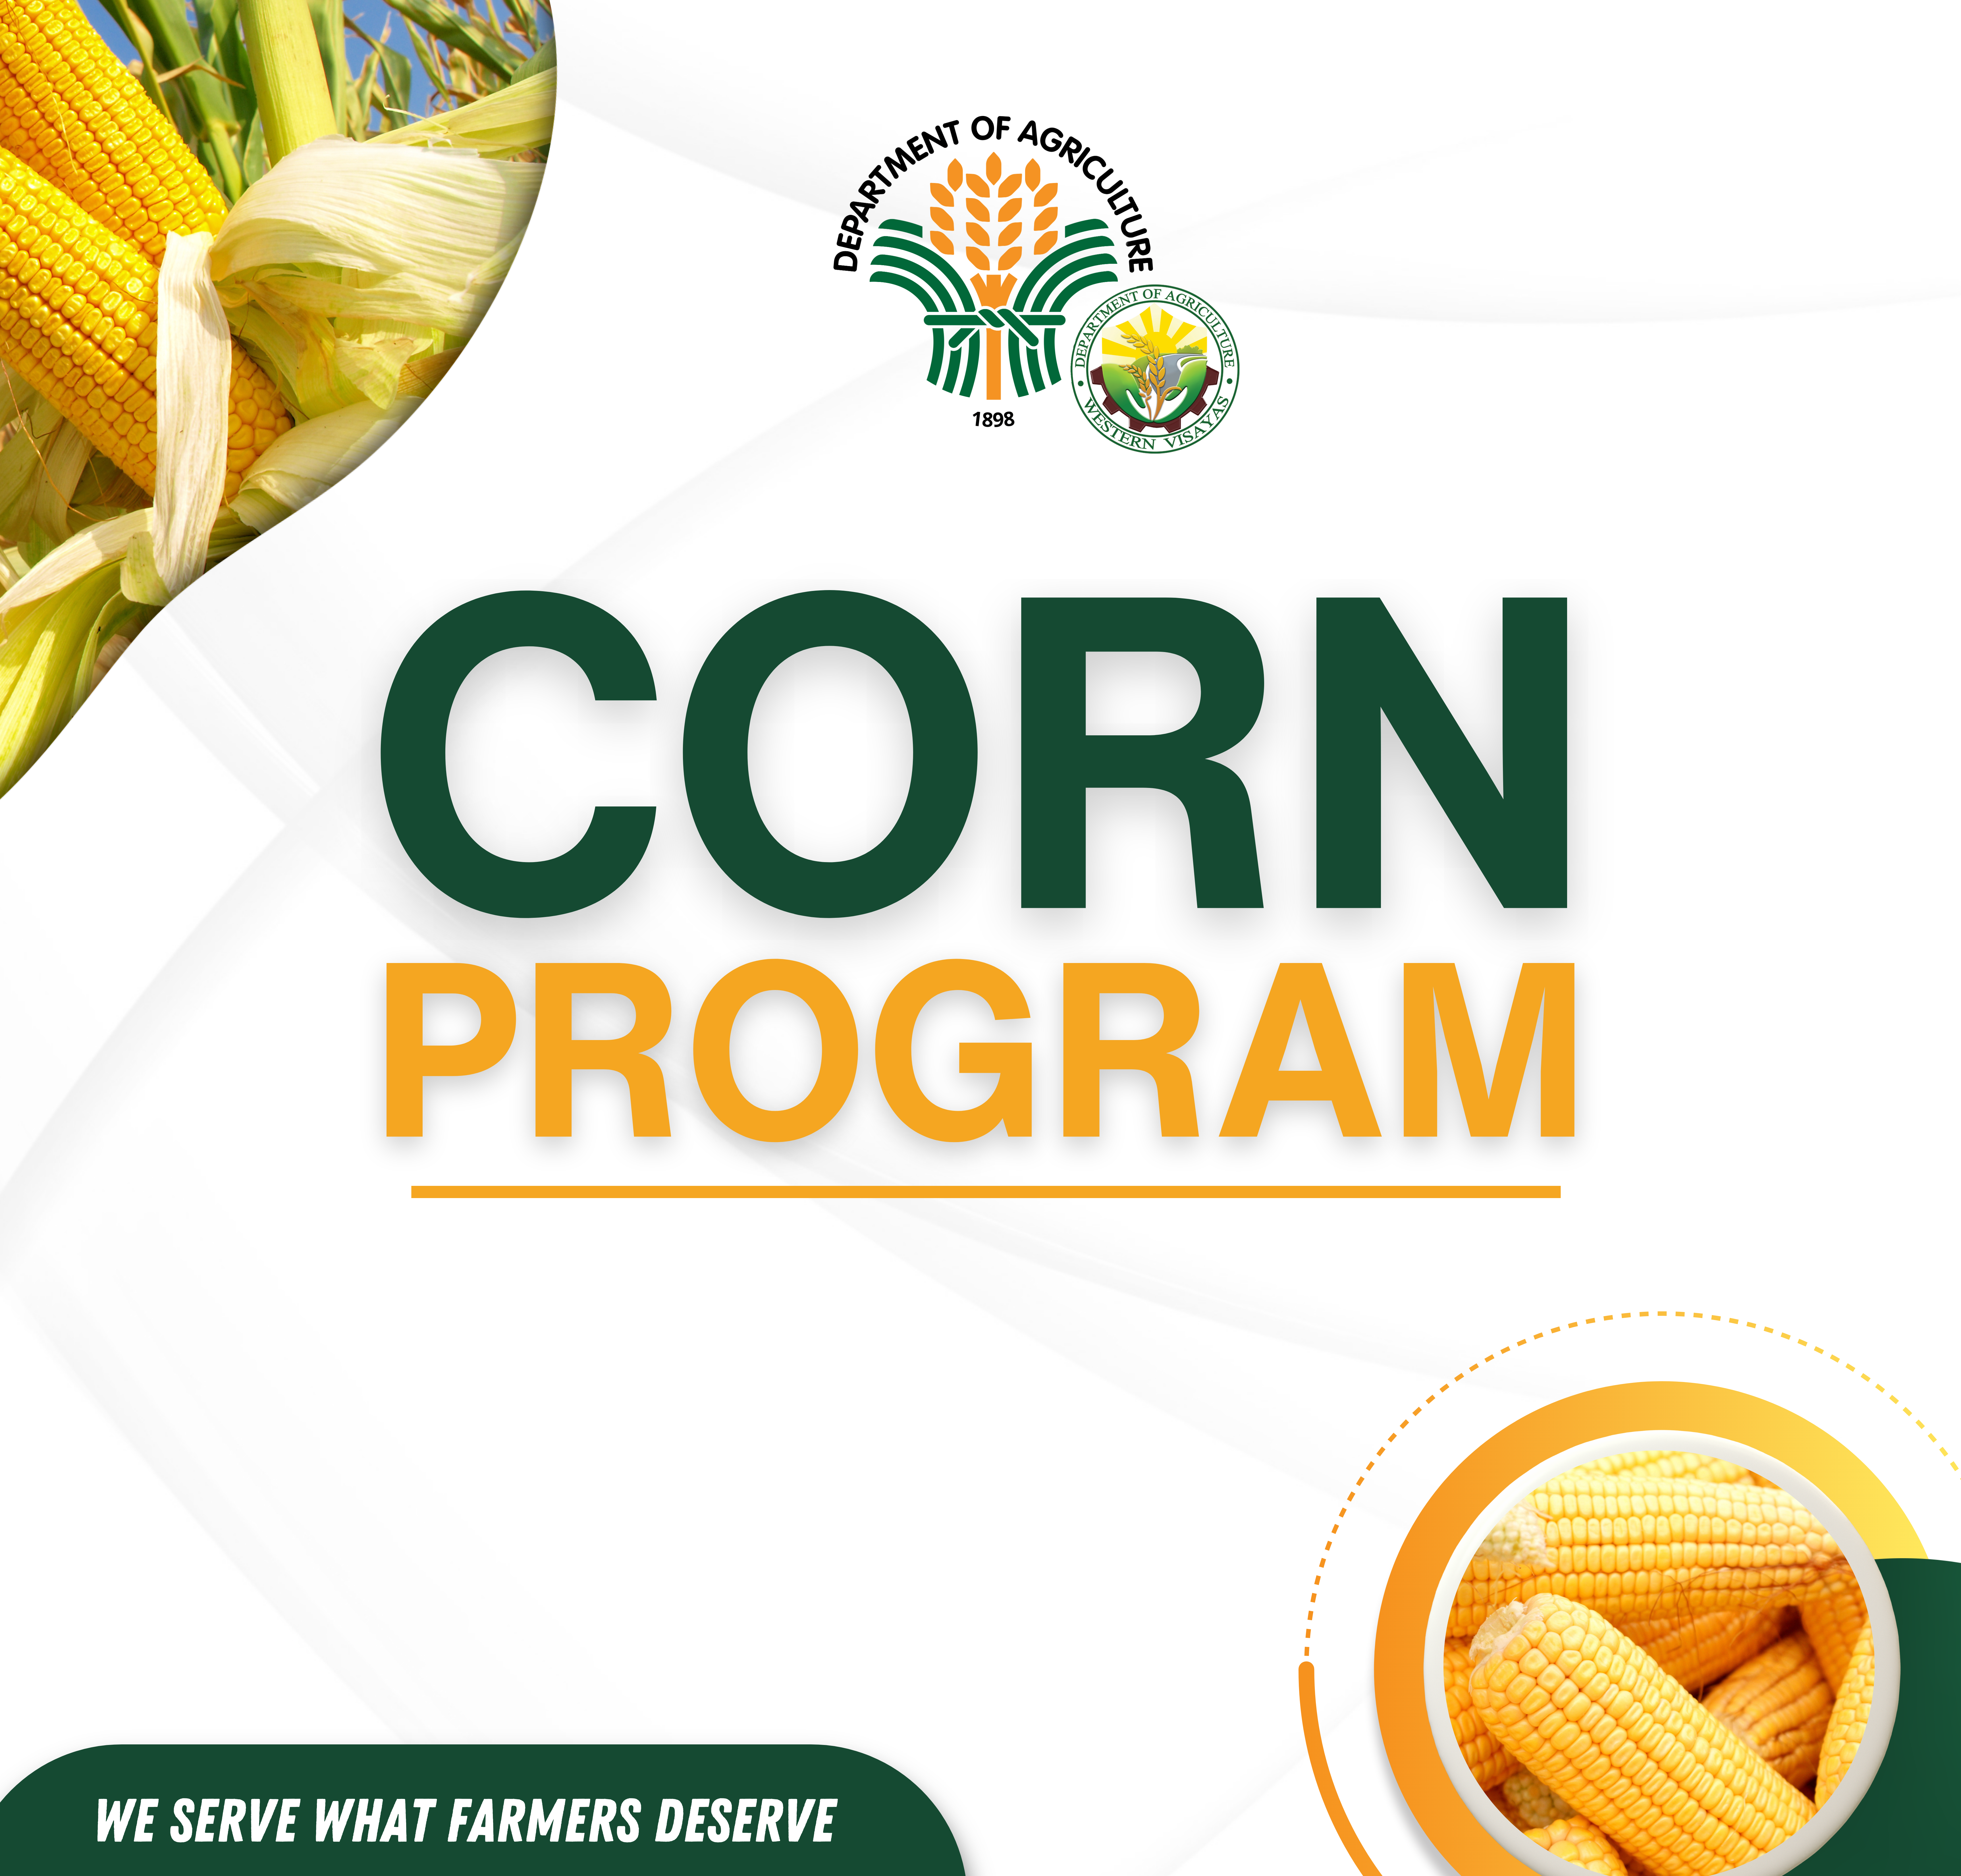 Corn Program IEC Materials